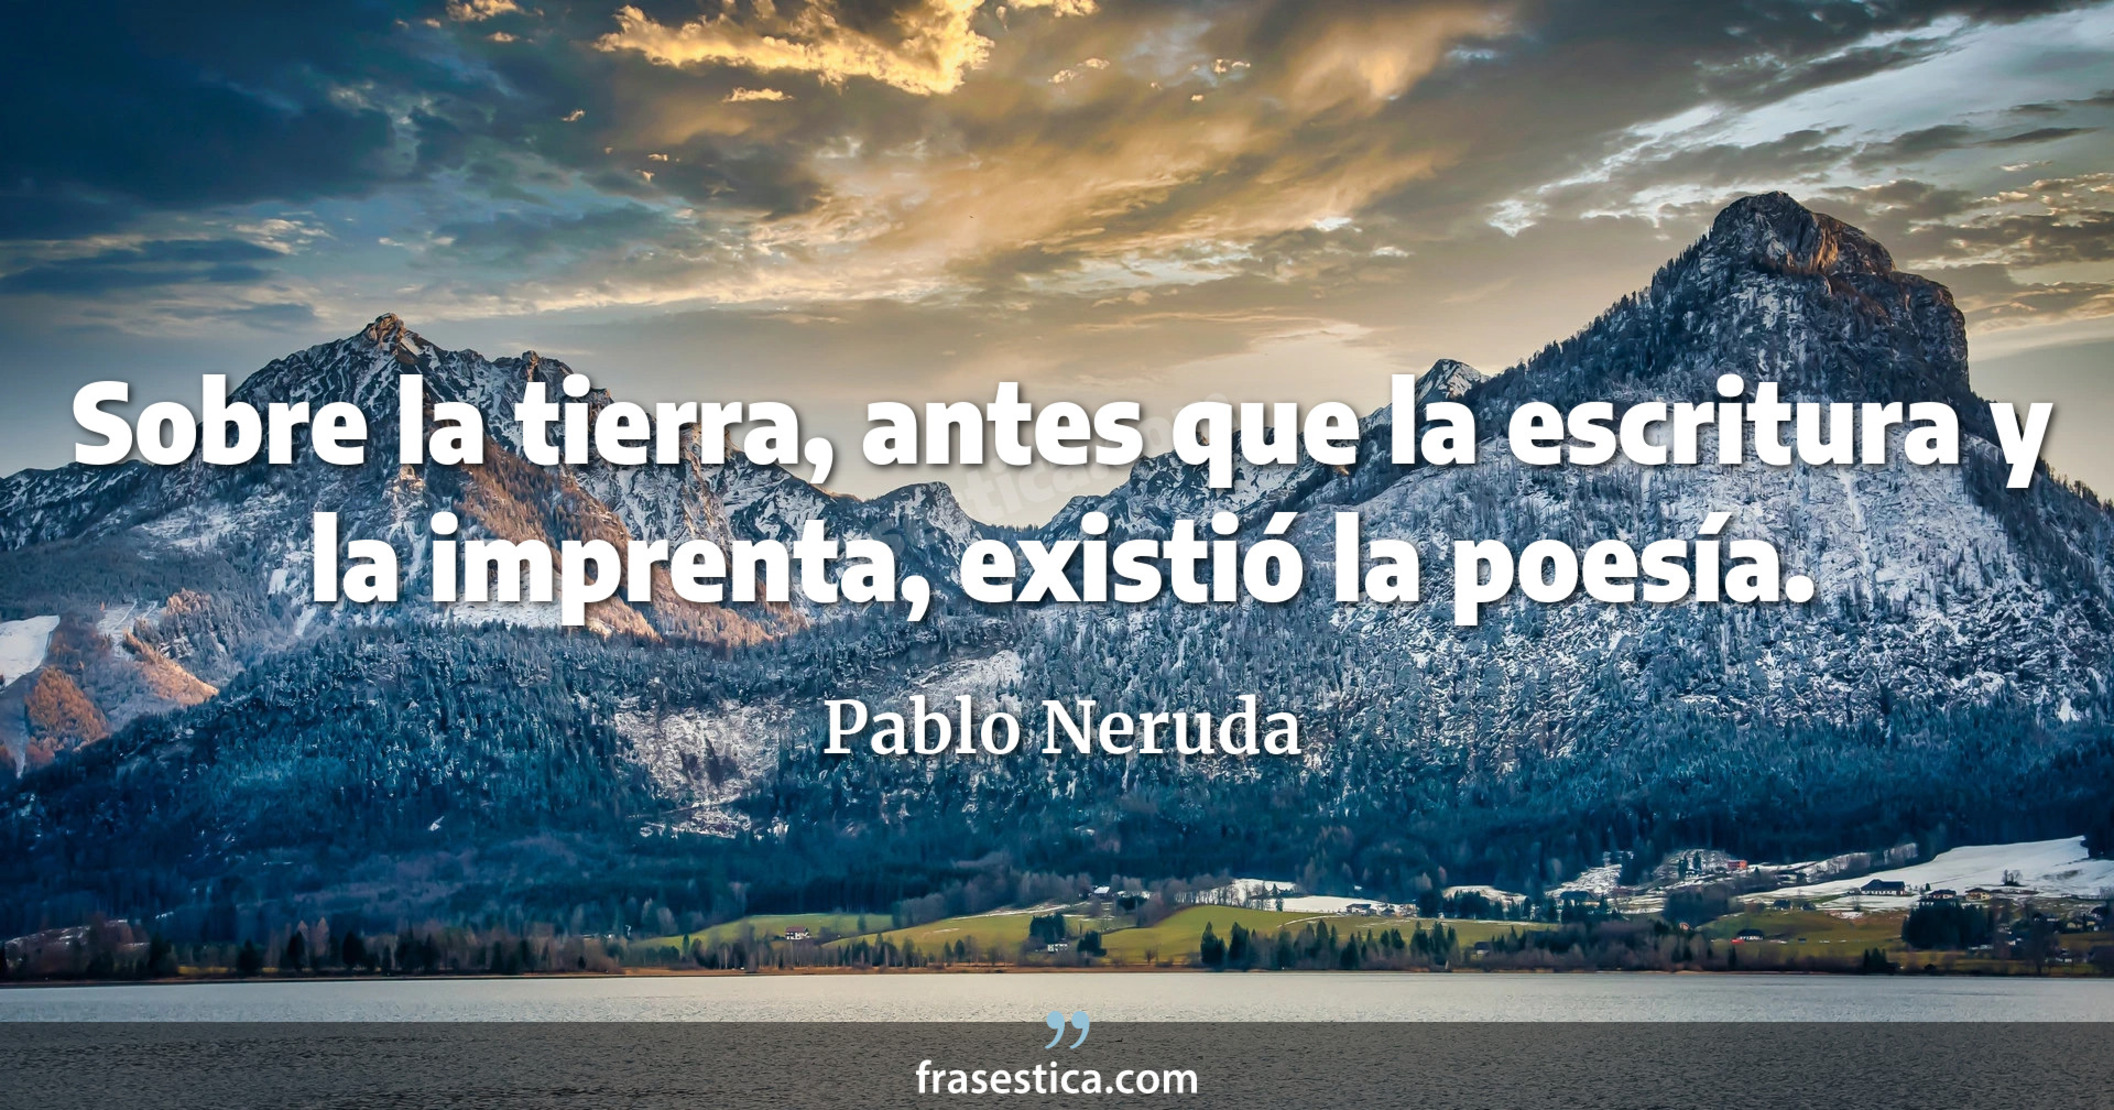 Sobre la tierra, antes que la escritura y la imprenta, existió la poesía. - Pablo Neruda